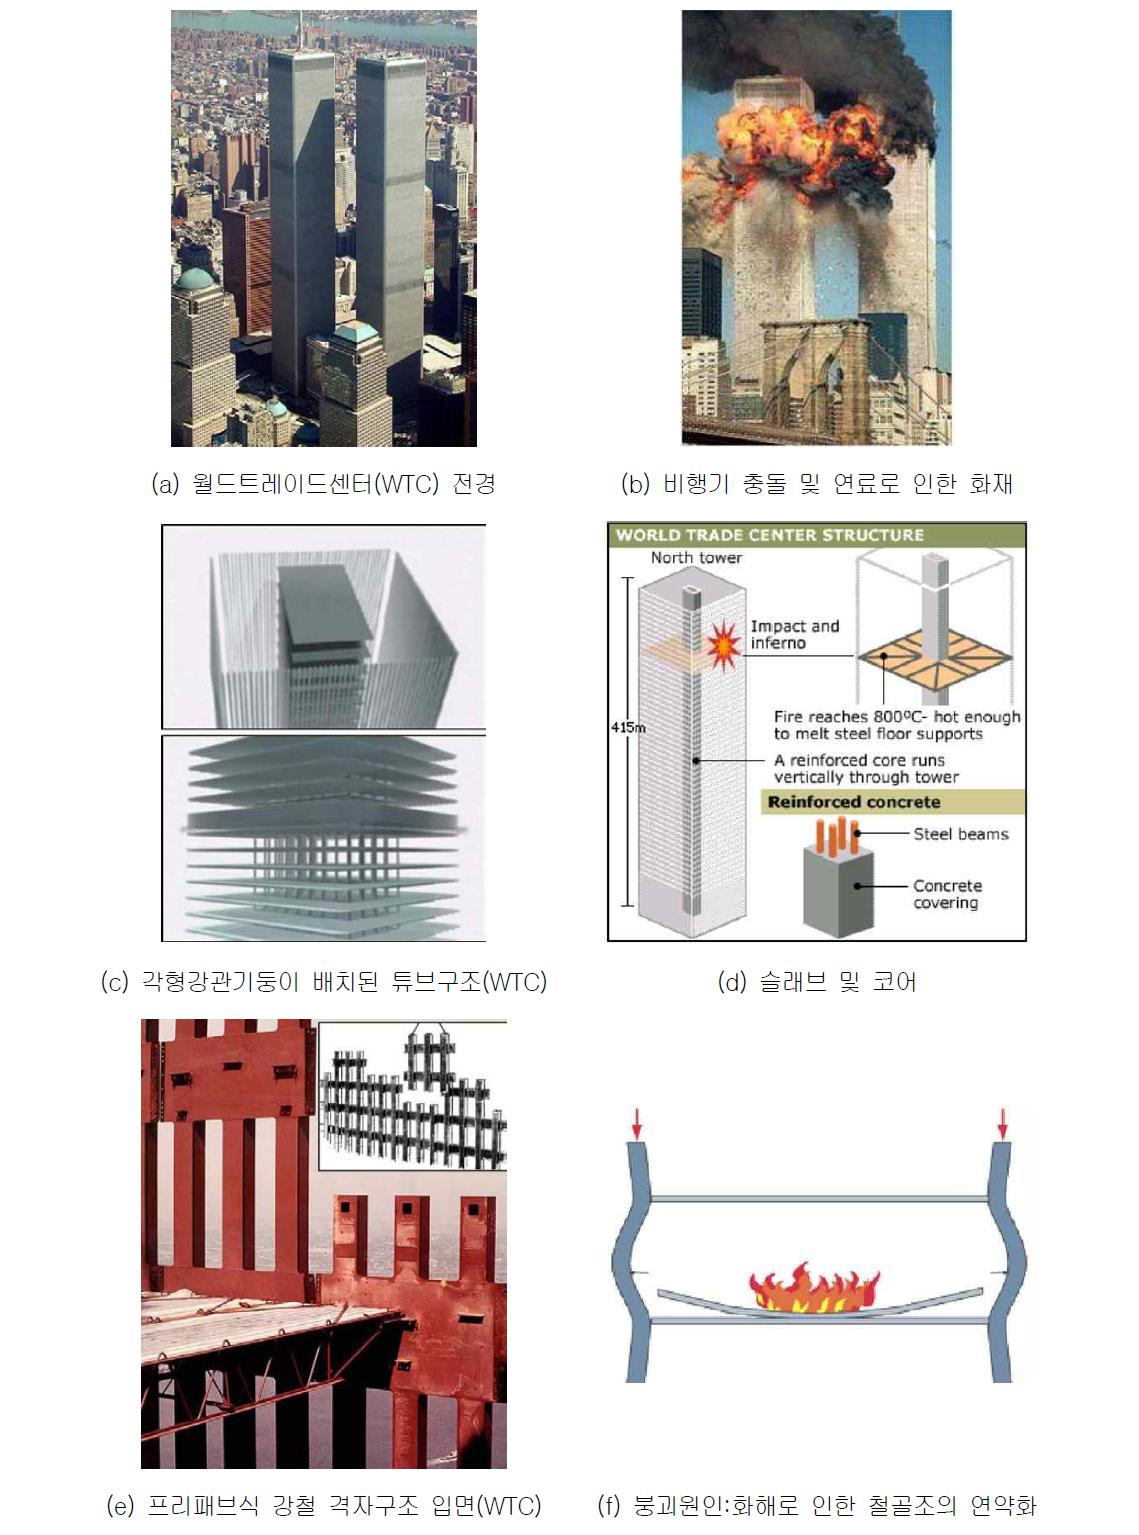 월드트레이드센터(WTC) 구조형식 및 붕괴원인